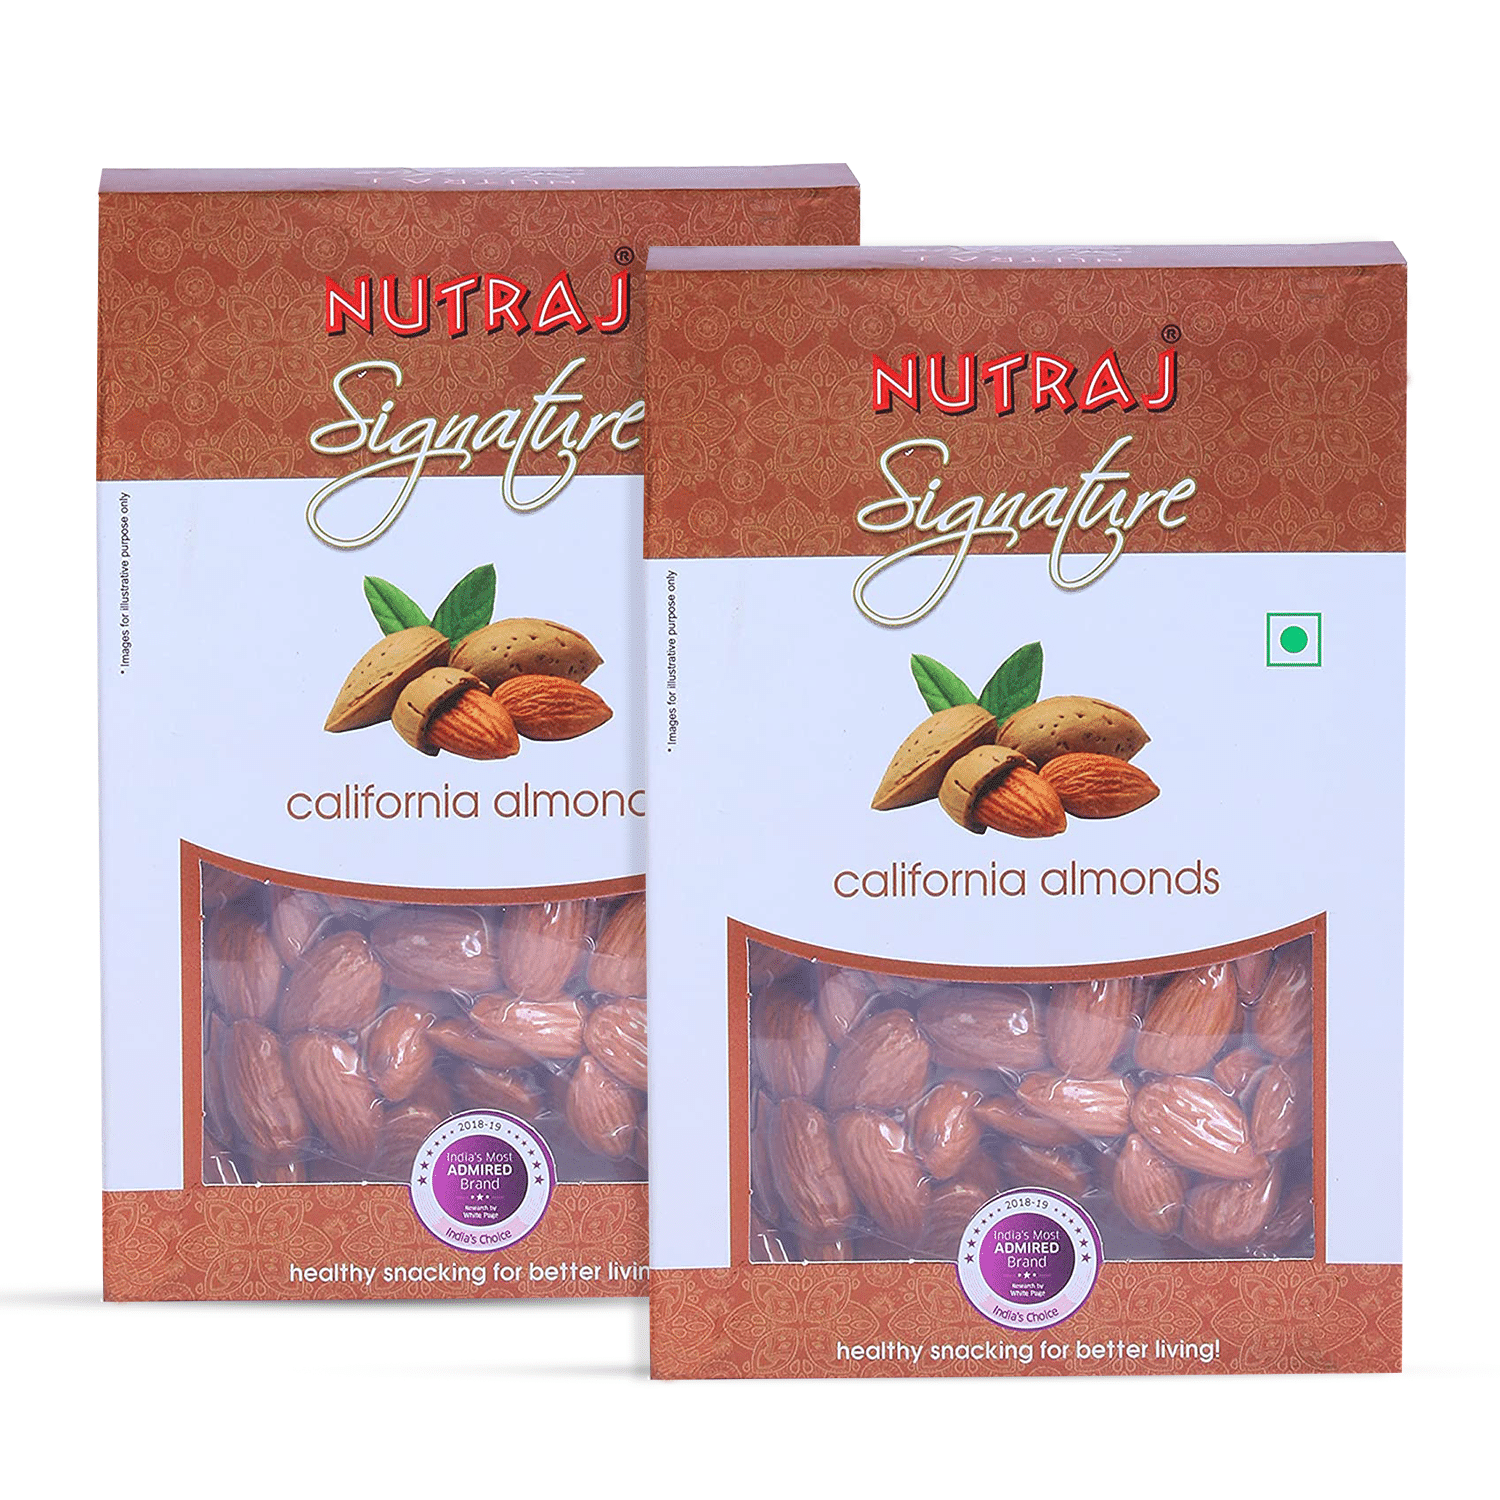 Nutraj Signature California Almonds Plain 400g (2 X 200g) - Vacuum Pack